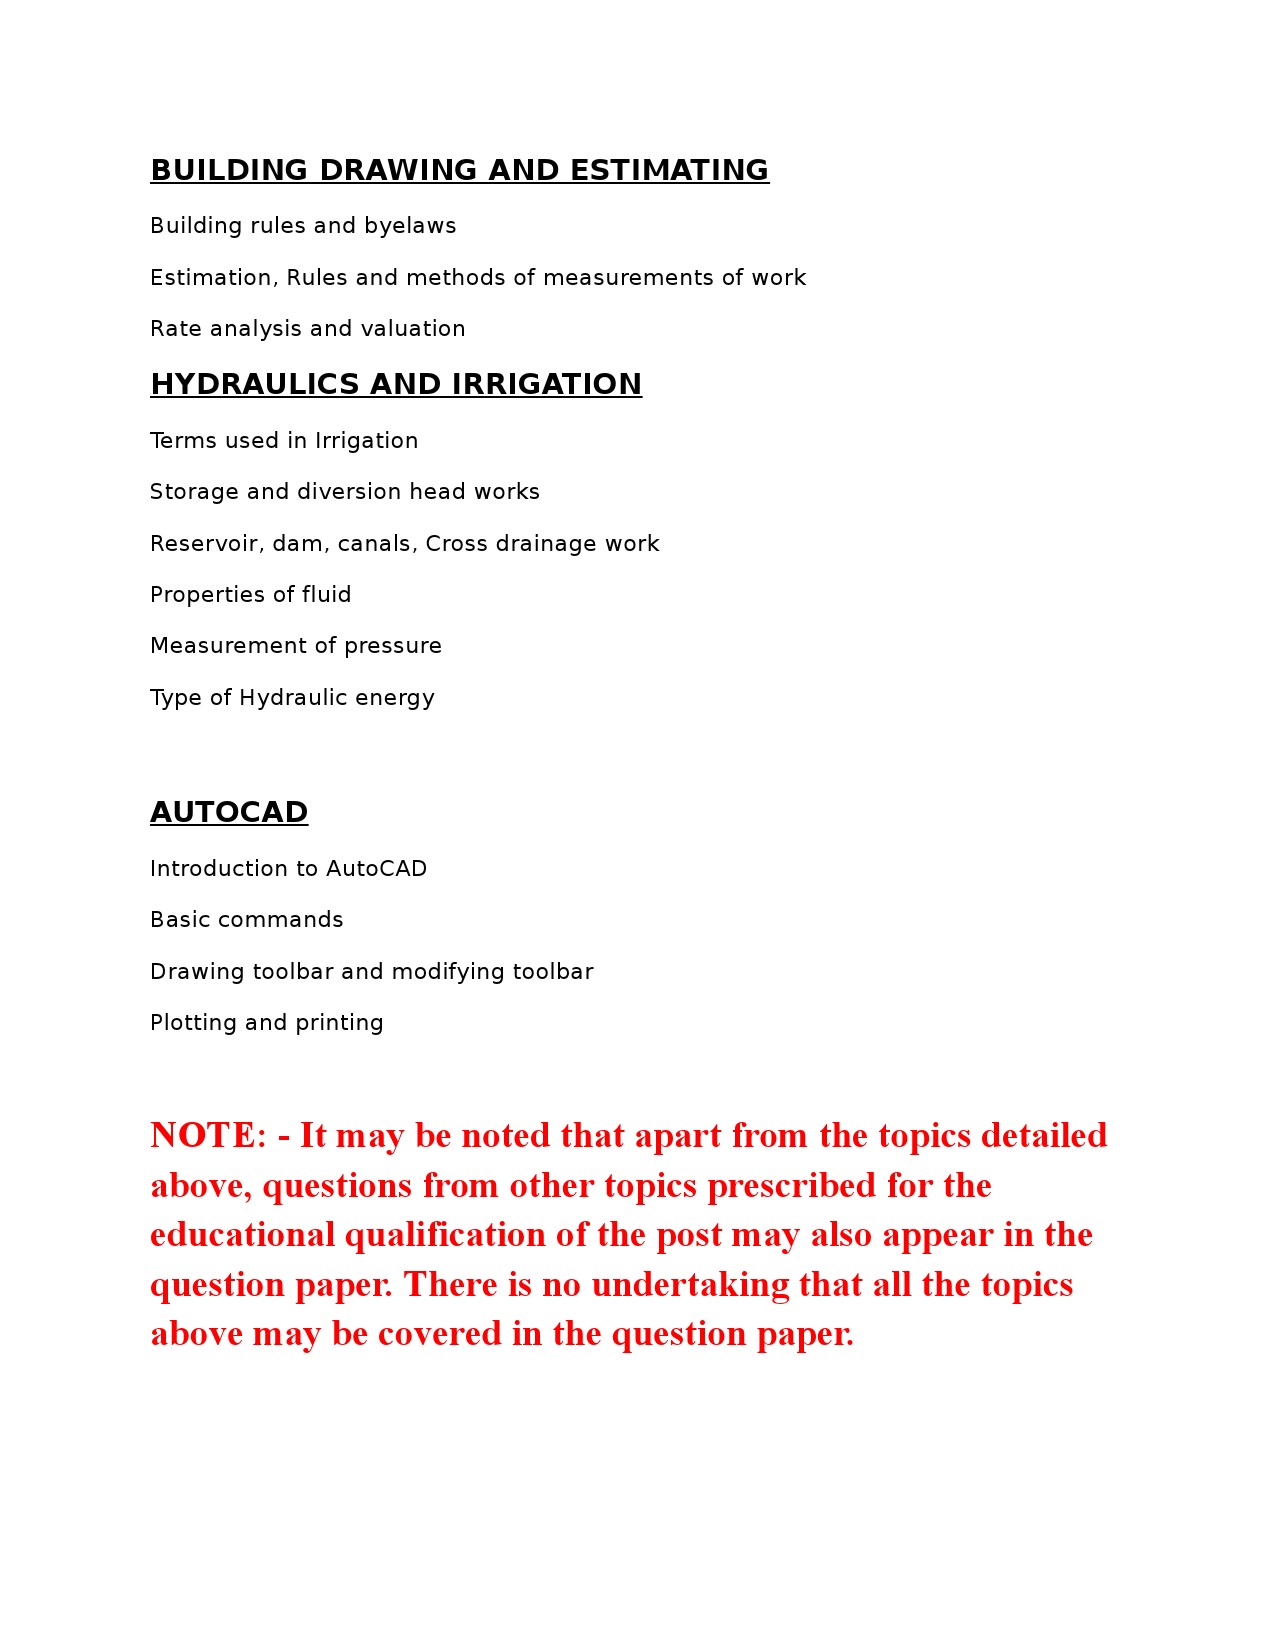 Draftsman Grade II KPSC Exam Syllabus May 2021 - Notification Image 2